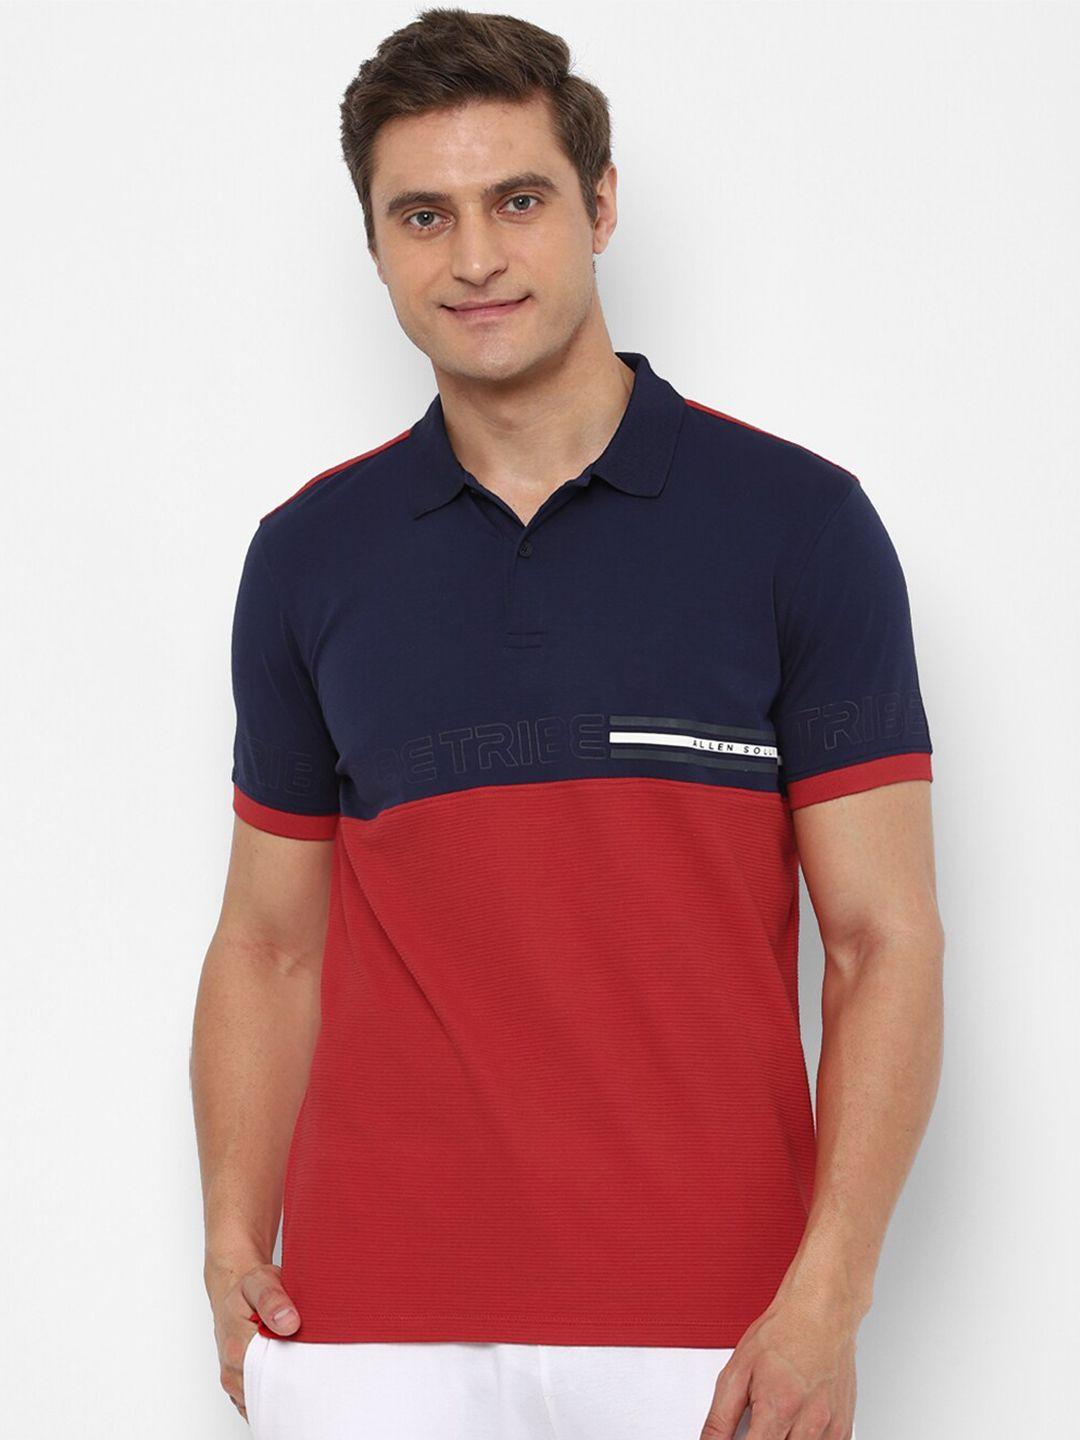 allen solly tribe men red & navy blue colourblocked polo collar cotton t-shirt